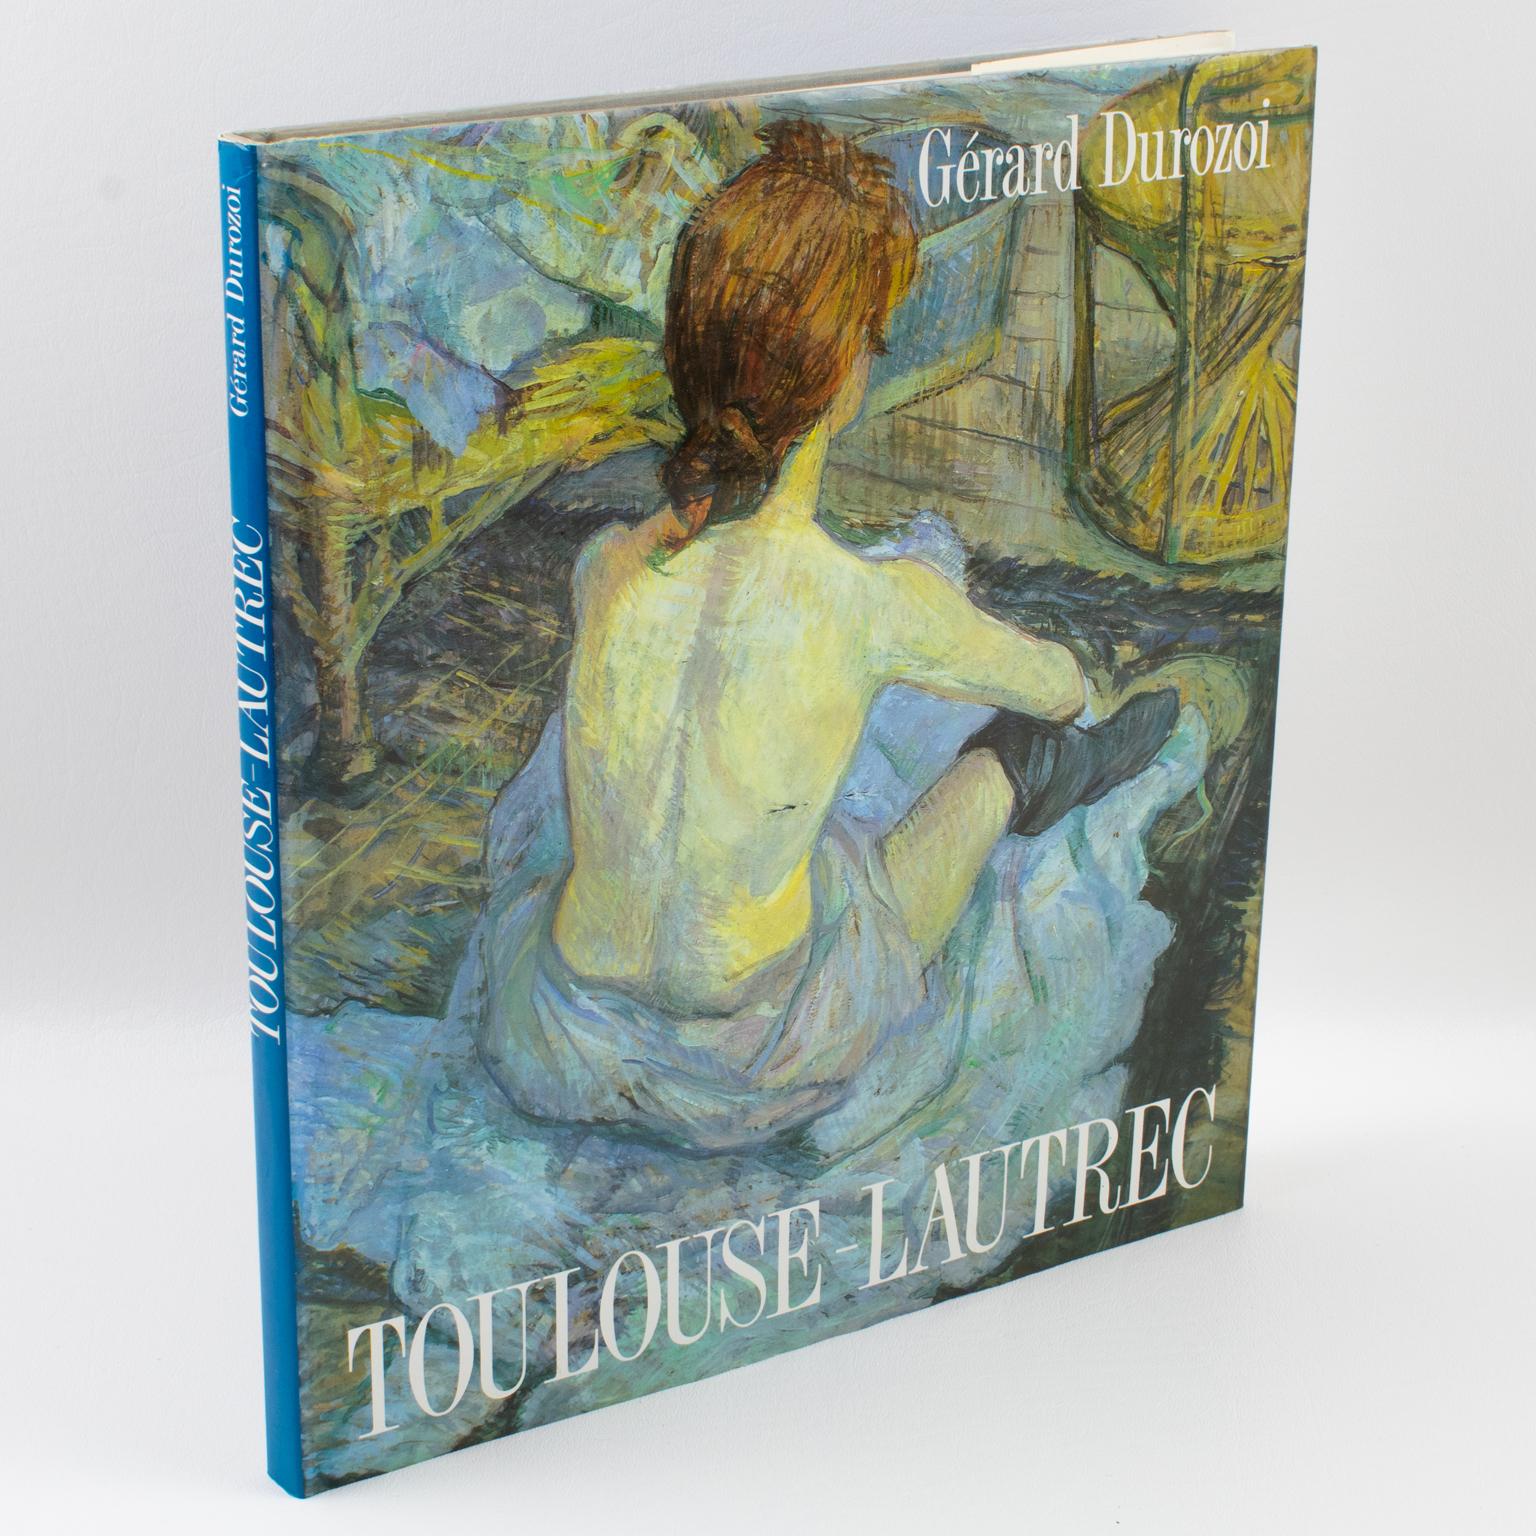 Toulouse-Lautrec, livre français de Gerard Dorozoi, 1992.
Henri de Toulouse-Lautrec (1864 - 1901) est presque unique parmi les artistes car il est devenu aussi célèbre pour son apparence et sa personnalité que pour son art. Les circonstances de la